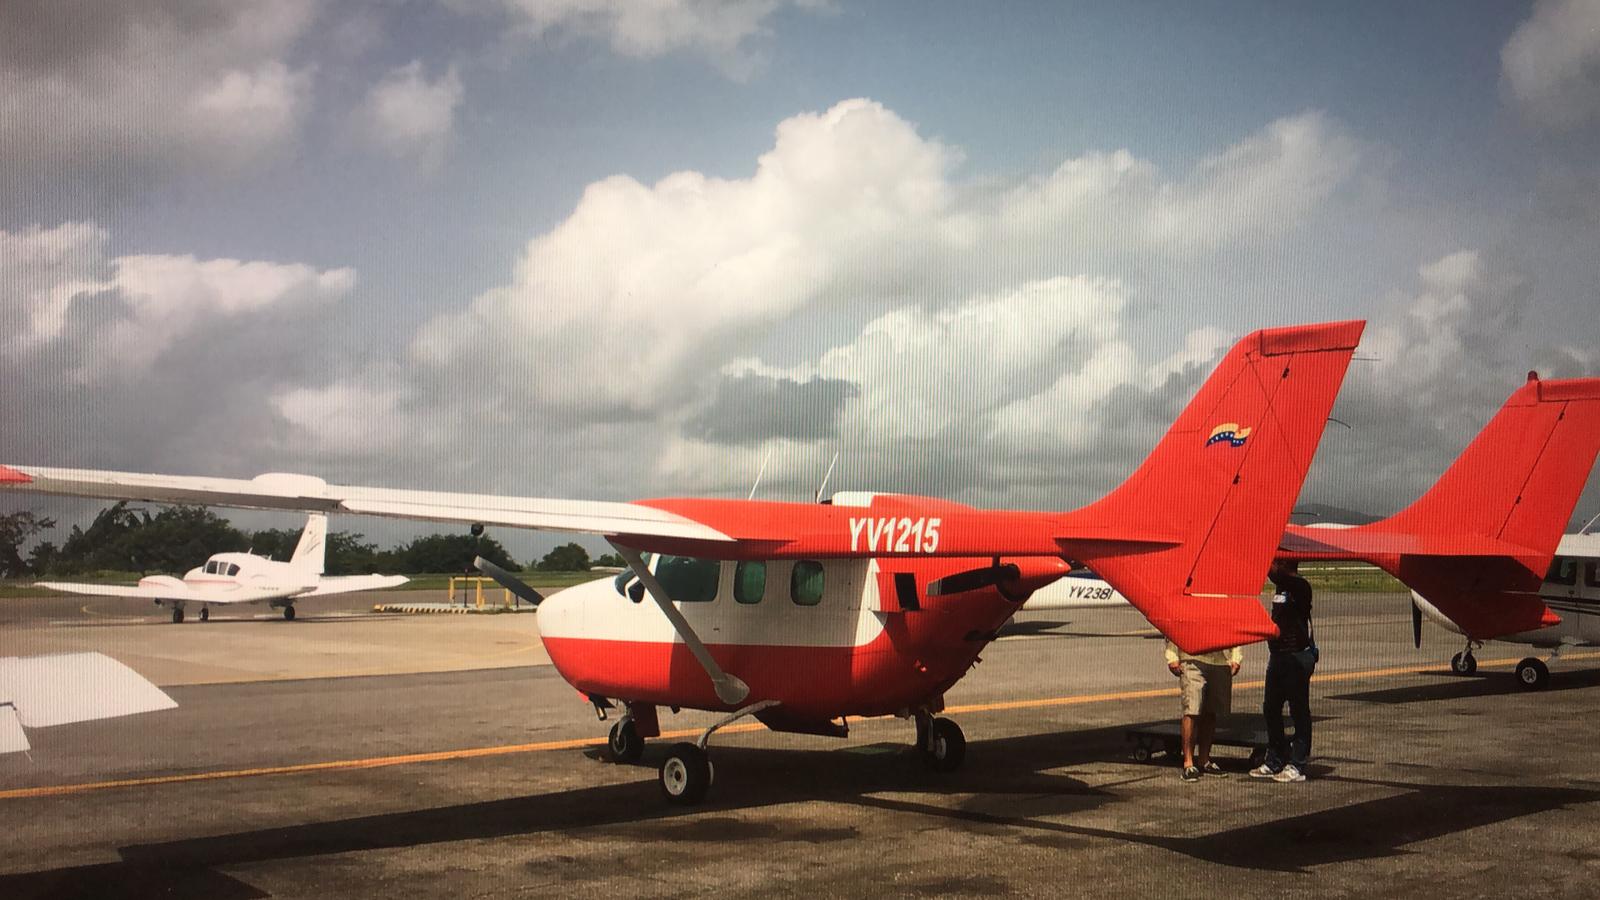 Cae avioneta en el estado Bolívar con seis ocupantes y se parte en dos sin víctimas que lamentar (FOTOS)